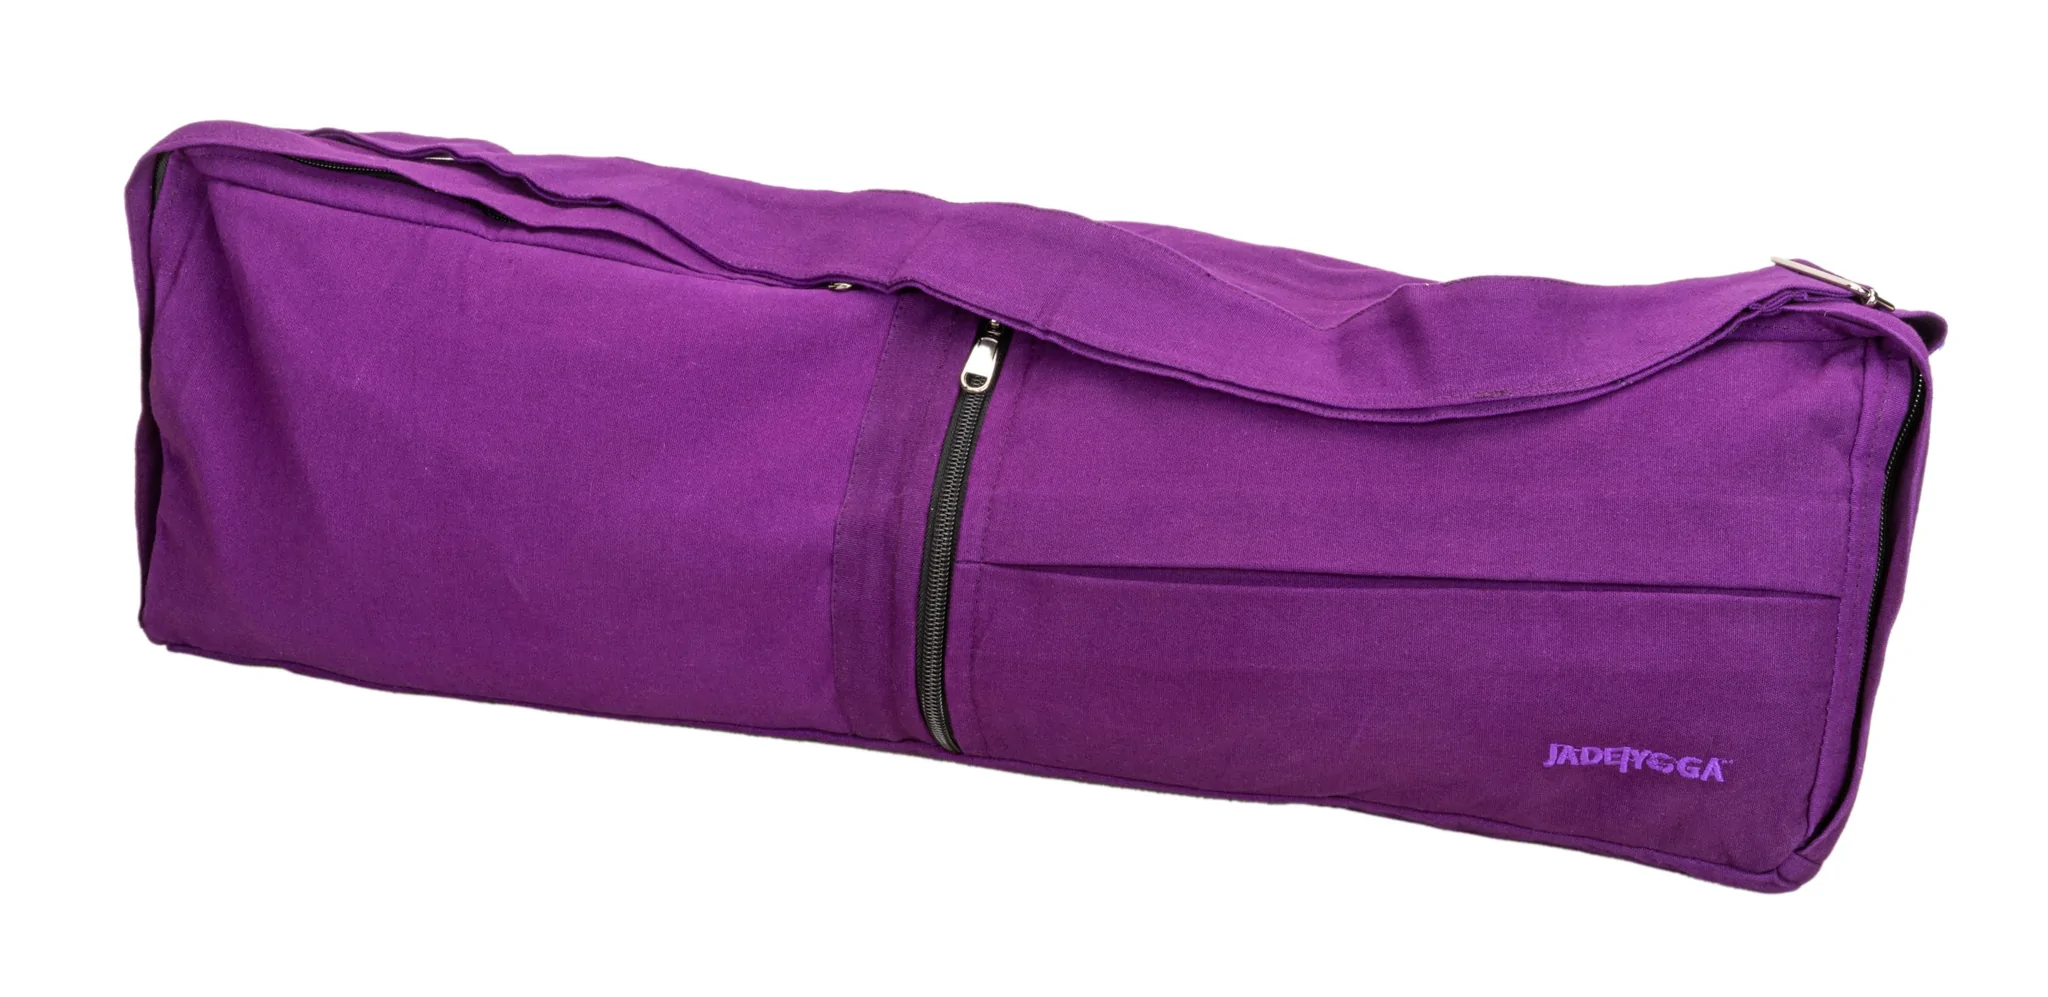 Yogamatters Organic Cotton Zip Up Yoga Bag